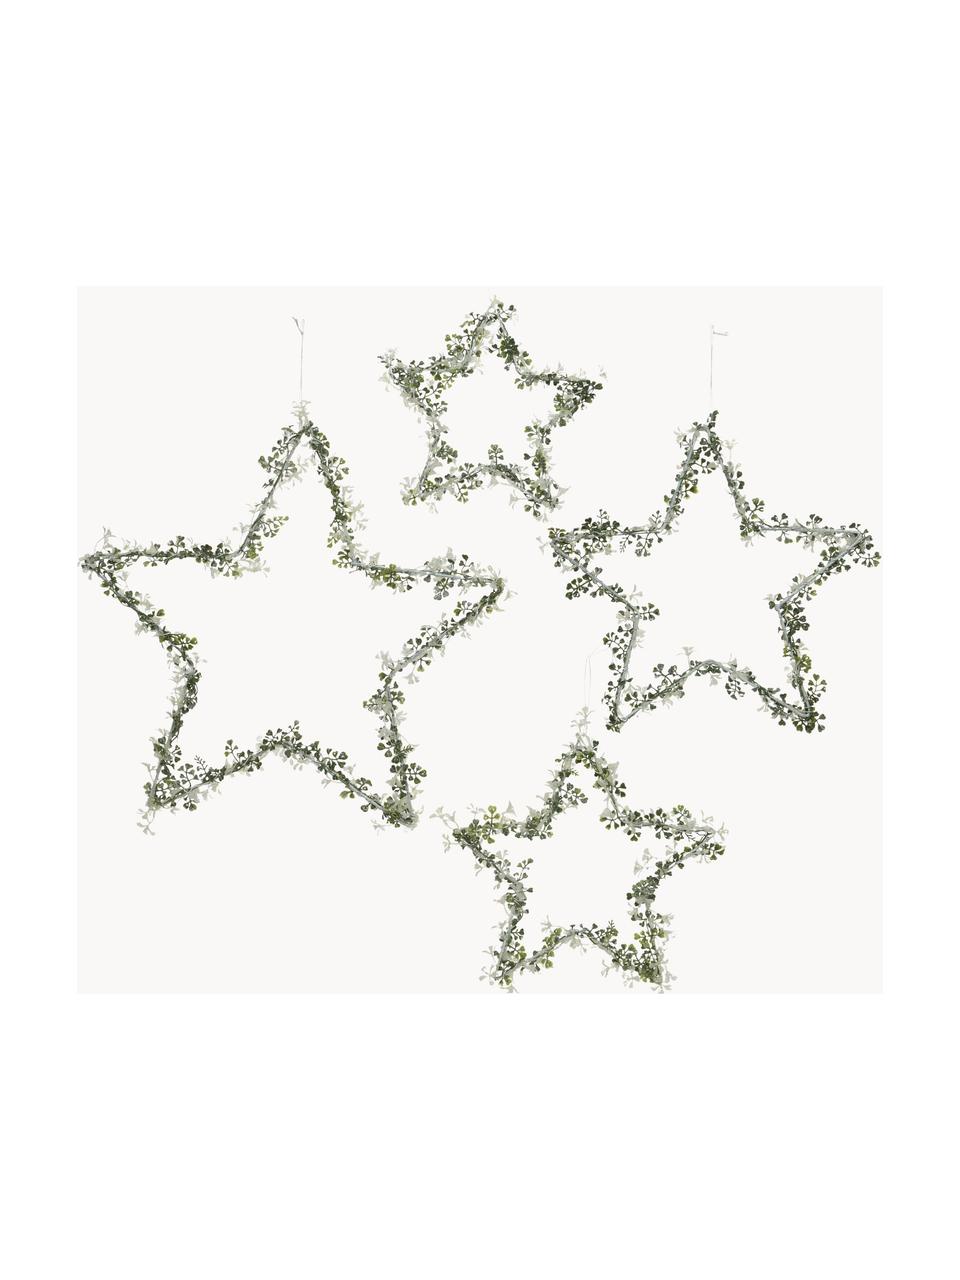 Sada dekorativních hvězd Starry, 4 díly, Kov, Zelená, bílá, Sada s různými velikostmi